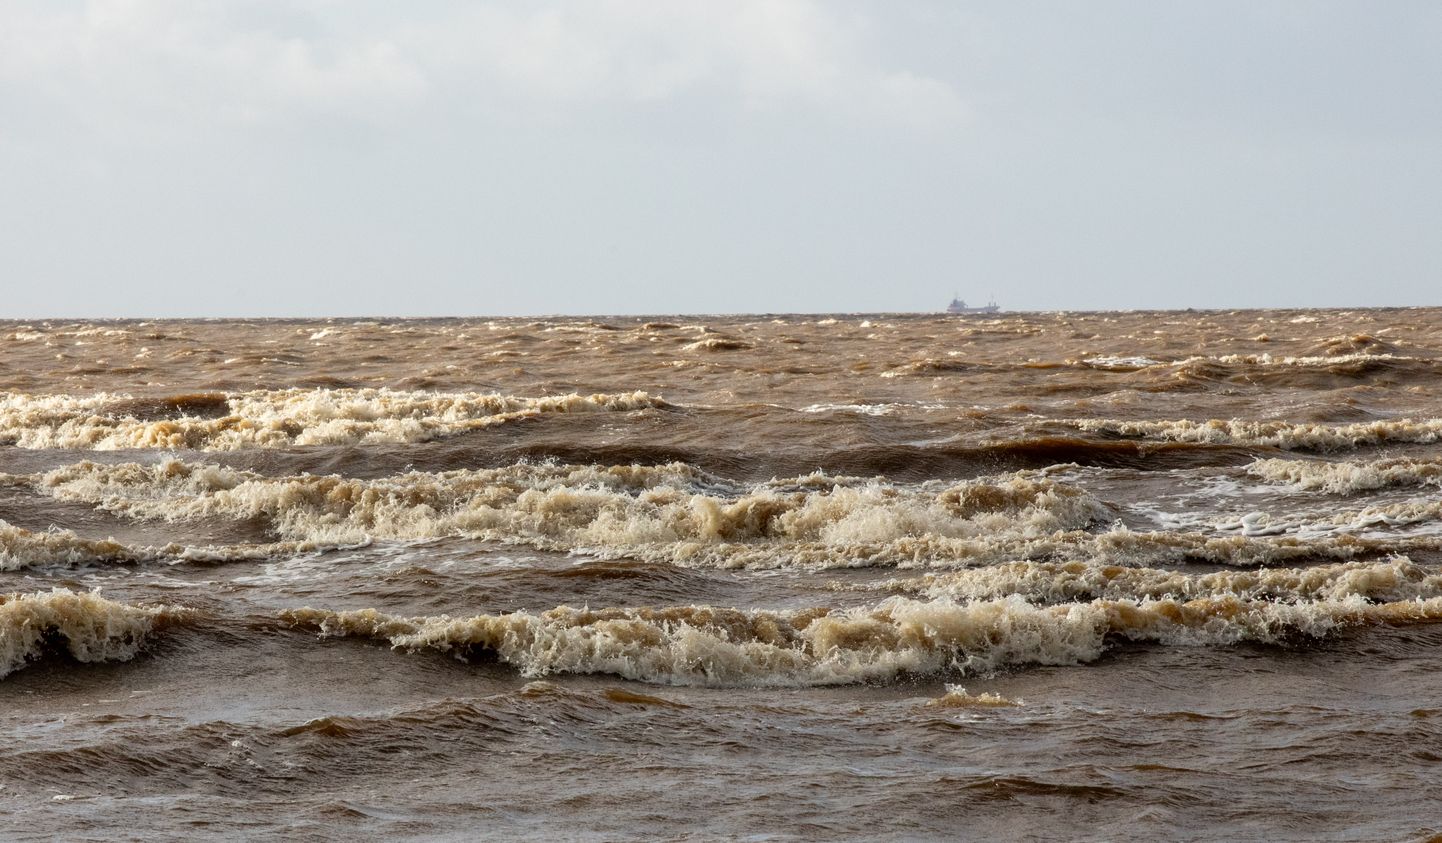 Tugev tuul võib tekitada korralikke laineid ka veekogudel. Pilt on illustratiivne.